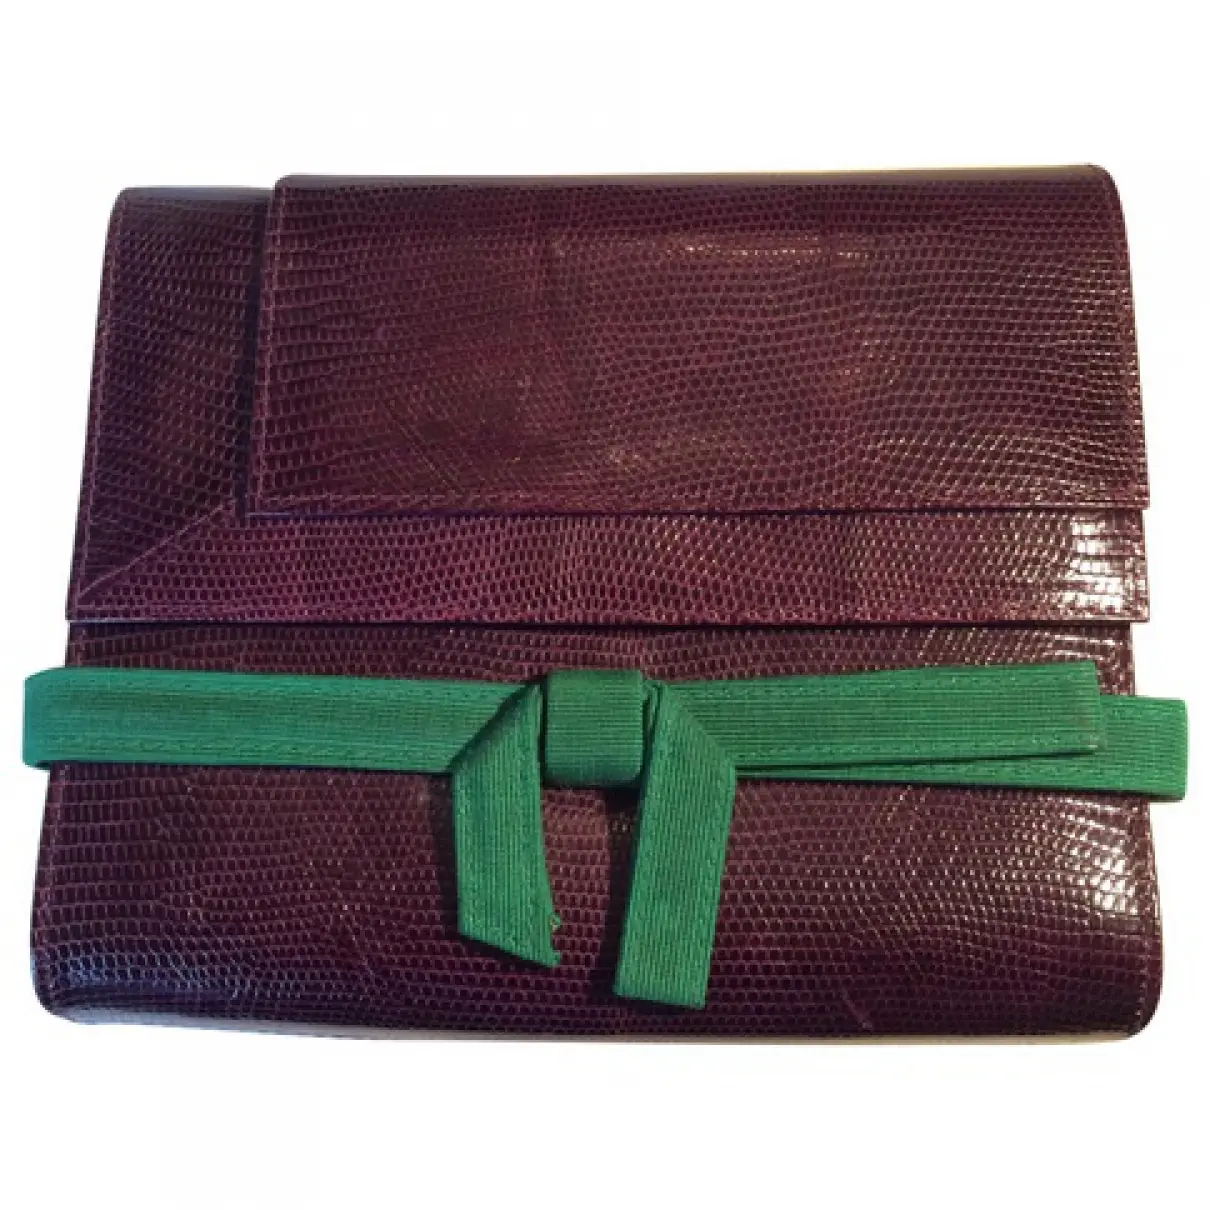 Purple Exotic leathers Handbag Gianni Versace - Vintage